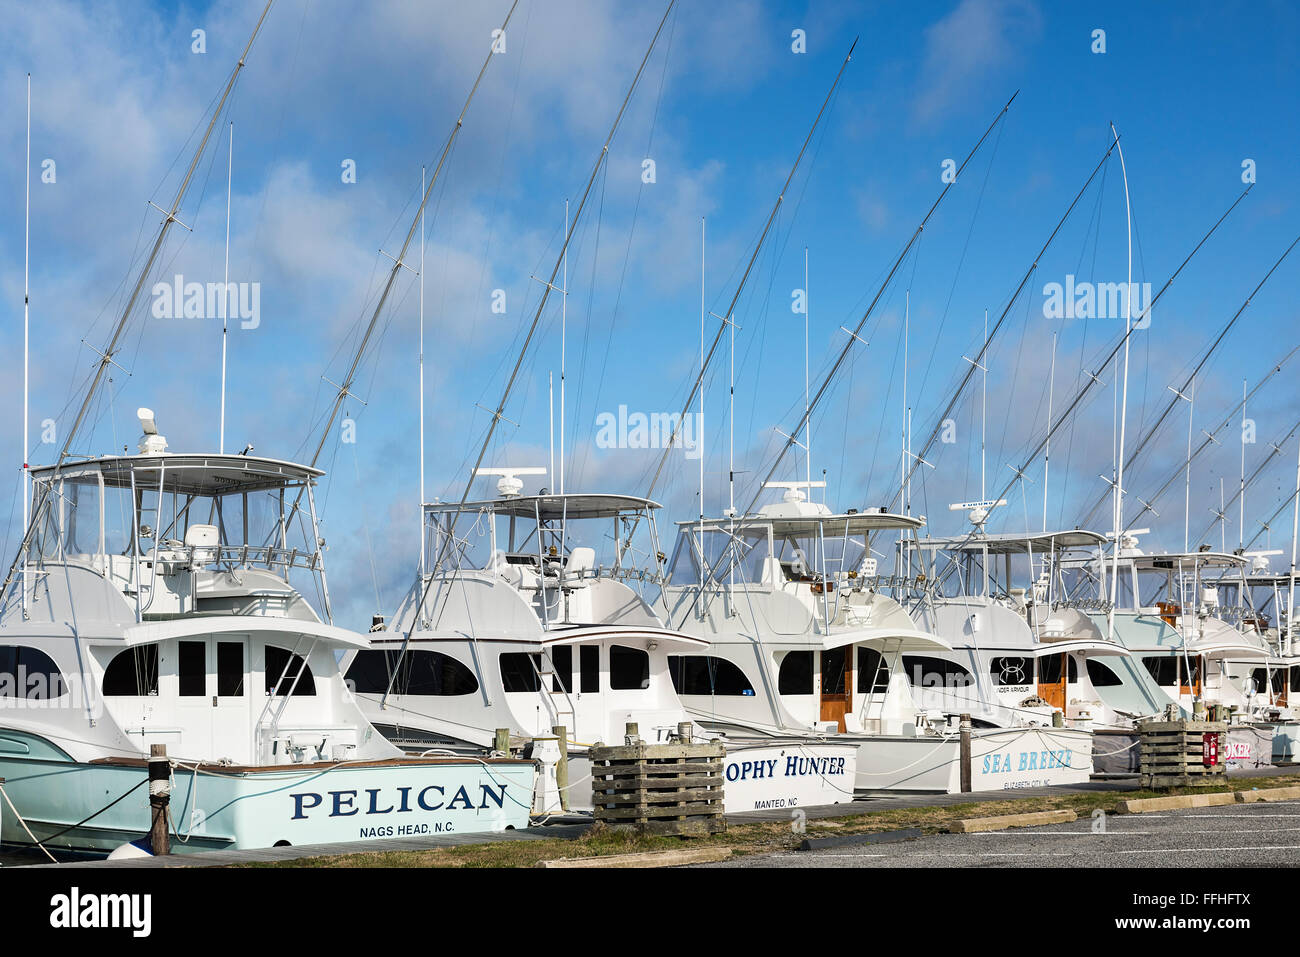 Inserito il piacere di barche da pesca, Oregon, Ingresso Nag Testa, Outer Banks, North Carolina, STATI UNITI D'AMERICA Foto Stock